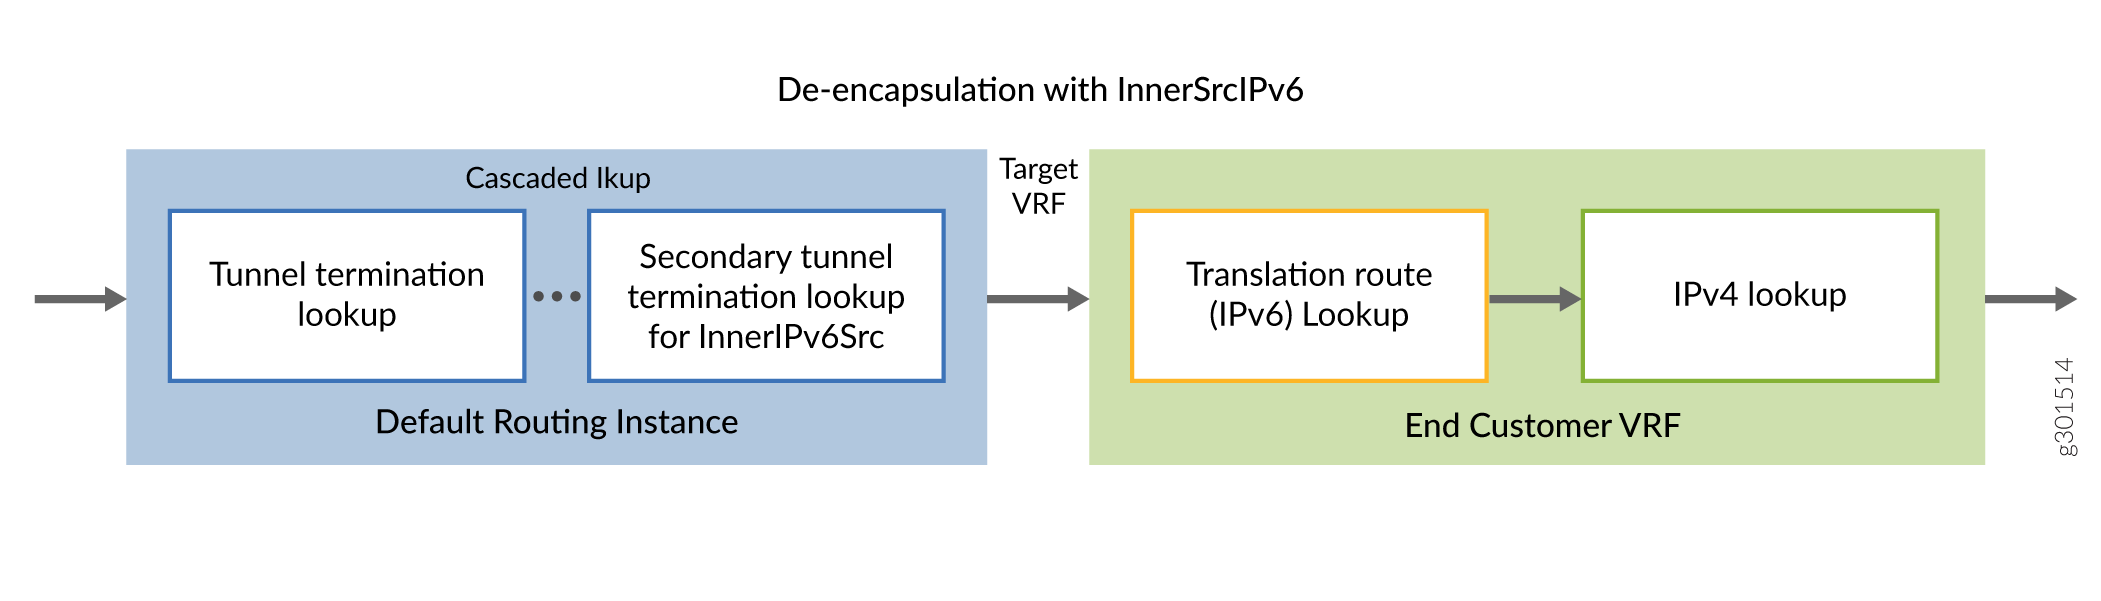 De-encapsulation with InnerIPv6Src